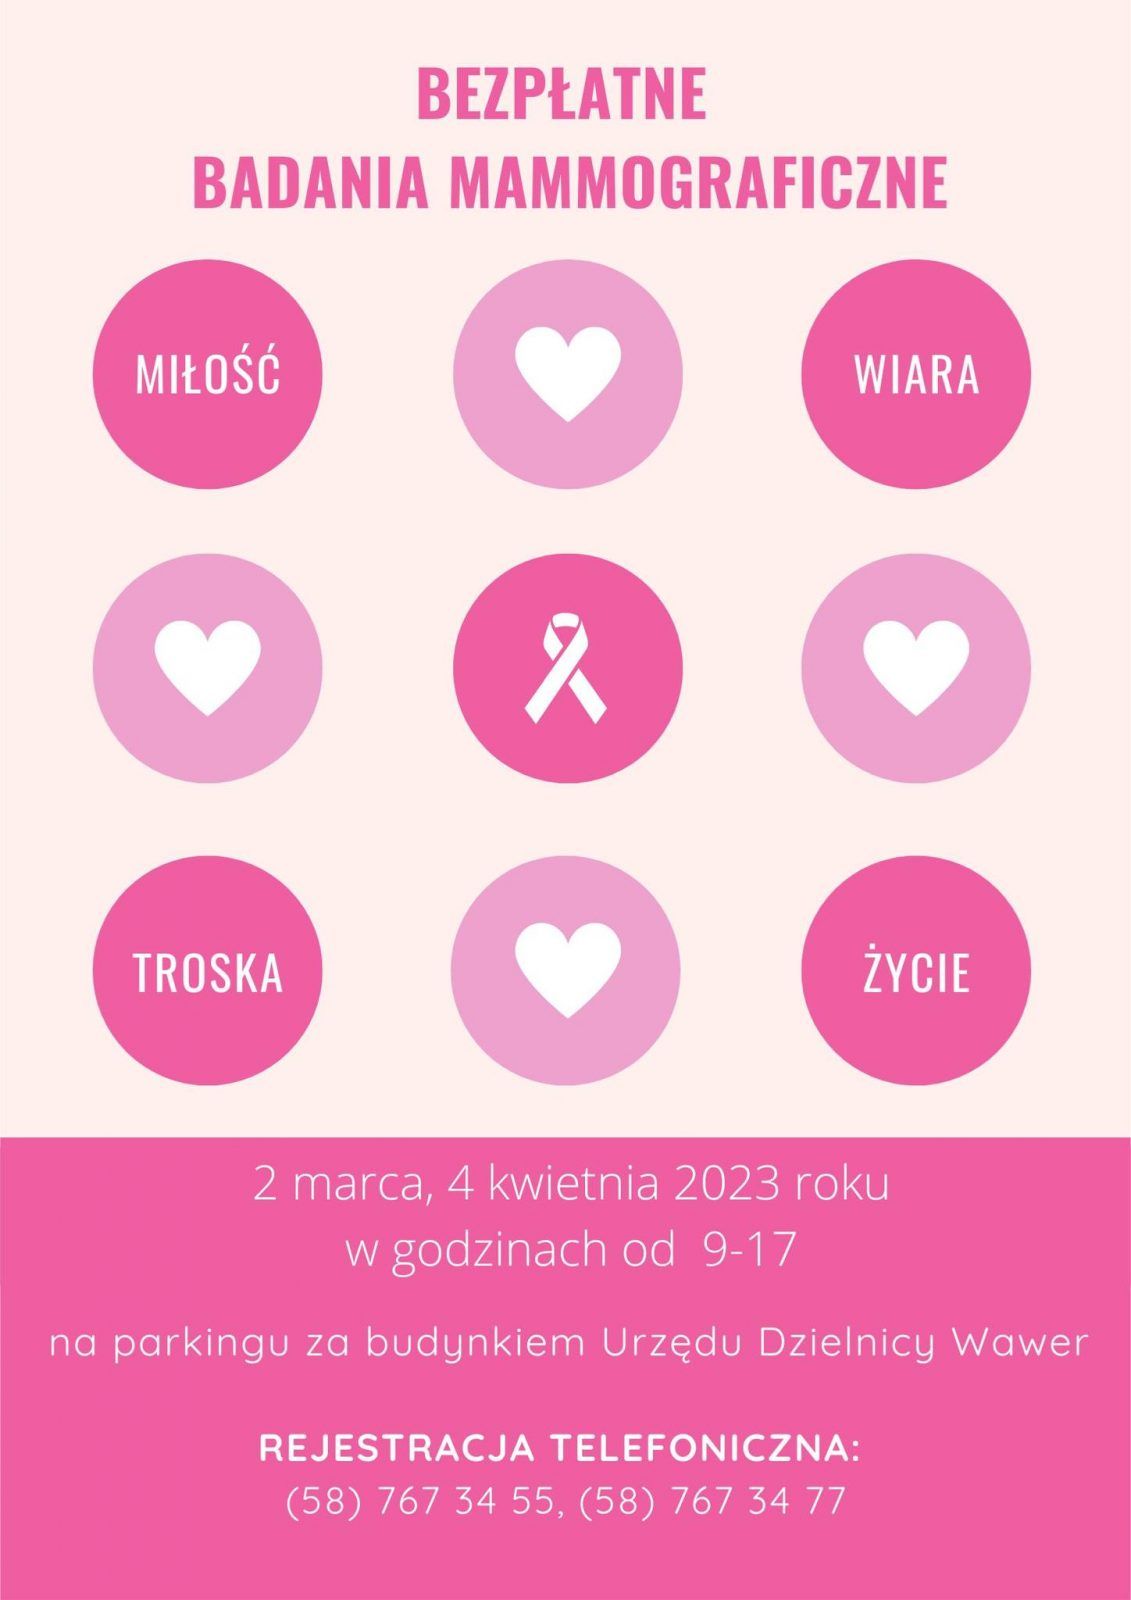 Bezpłatna mammografia w Wawrze i na Targówku